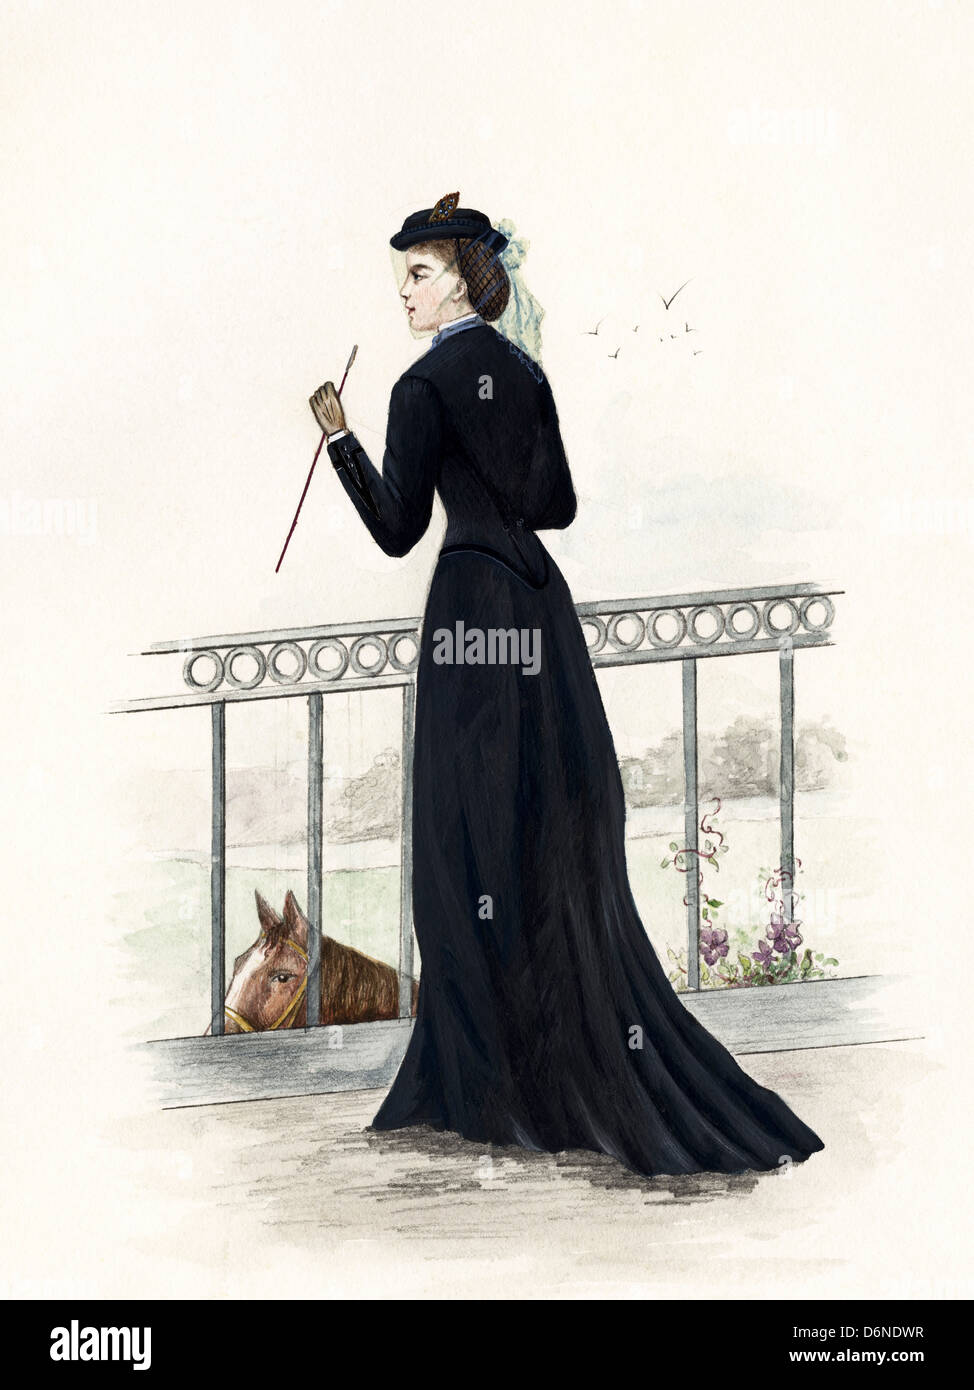 La mode française de l'époque victorienne en date du 1873. Aquarelle originale artiste inconnu Banque D'Images